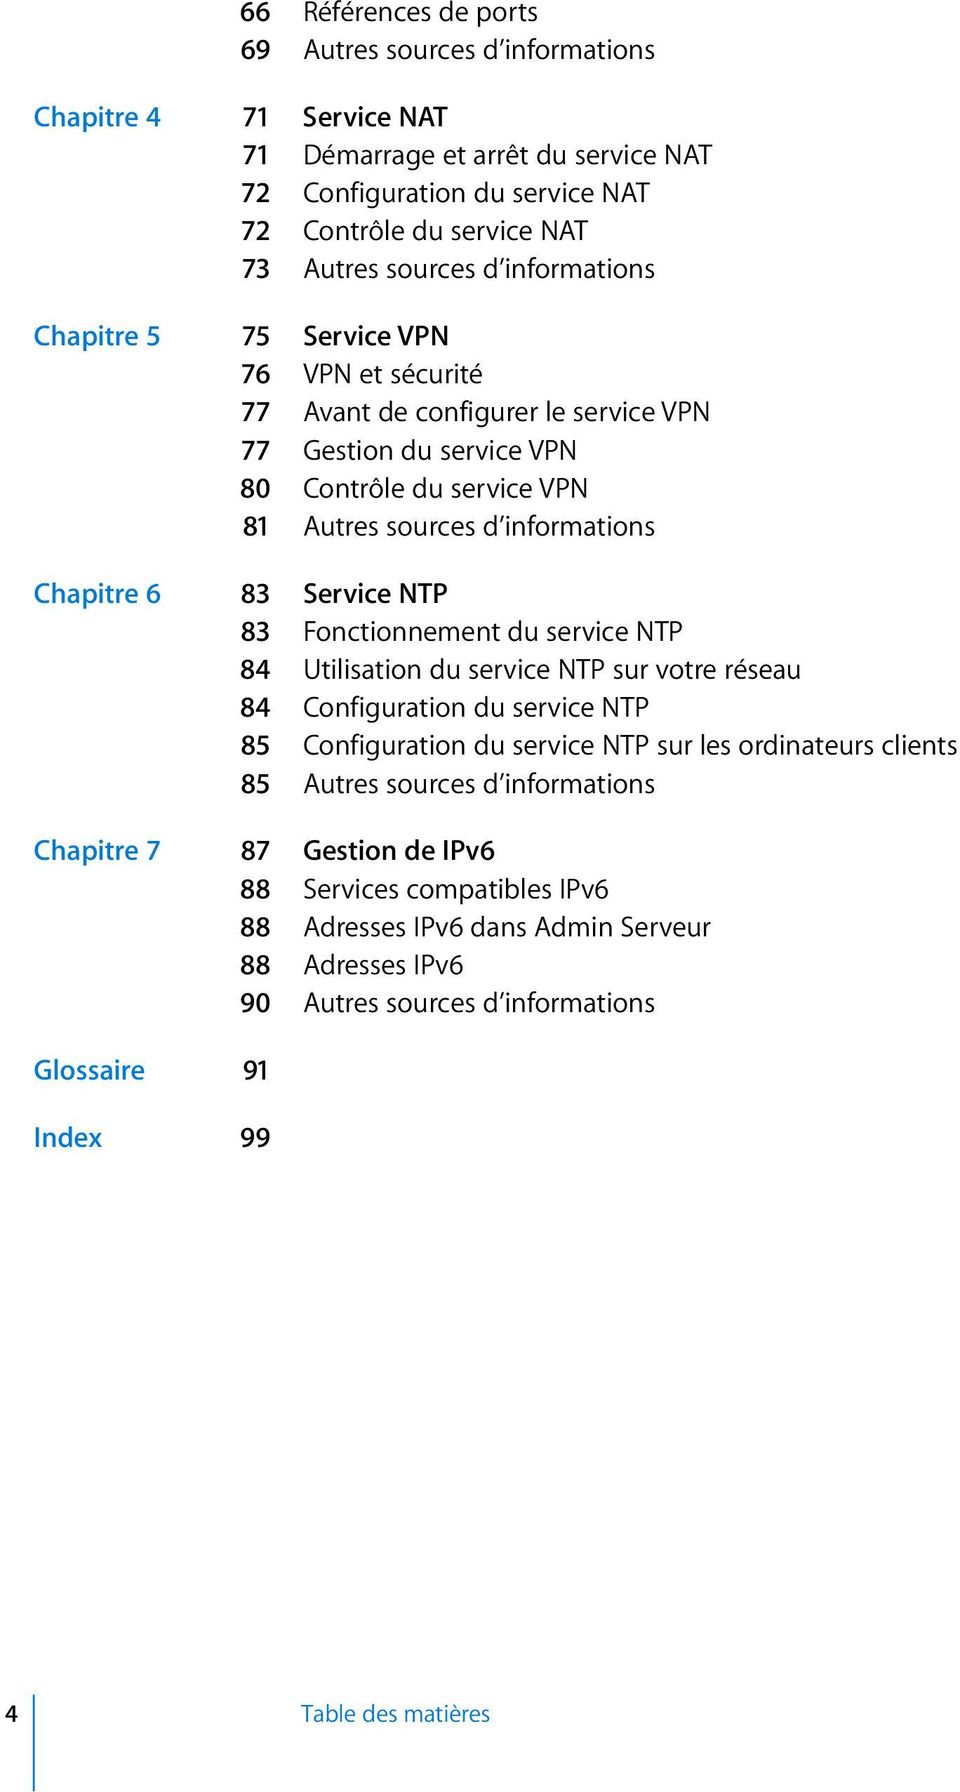 Service NTP 83 Fonctionnement du service NTP 84 Utilisation du service NTP sur votre réseau 84 Configuration du service NTP 85 Configuration du service NTP sur les ordinateurs clients 85 Autres